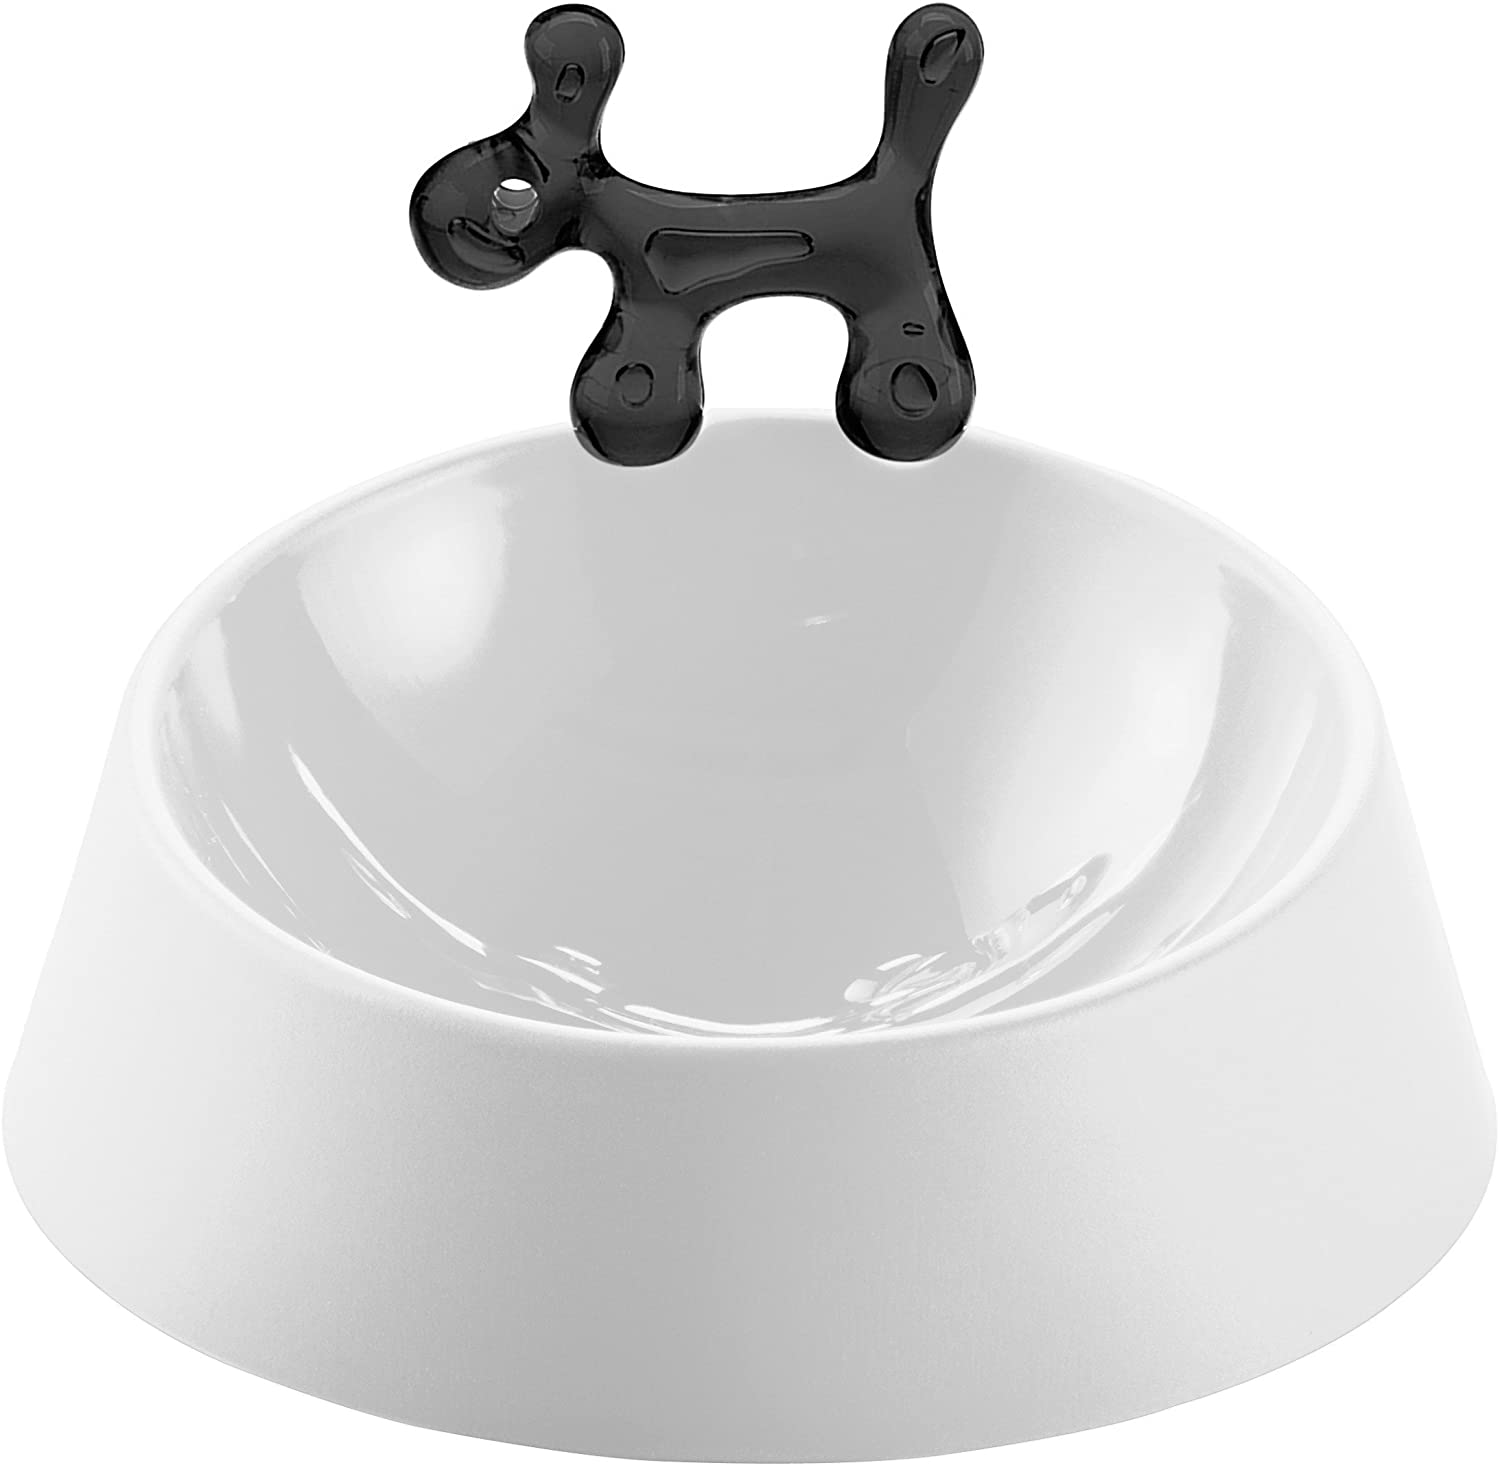 Koziol Wow Dog Bowl, Plastic, Black With White, 21 X 21 X 13.8 Cm